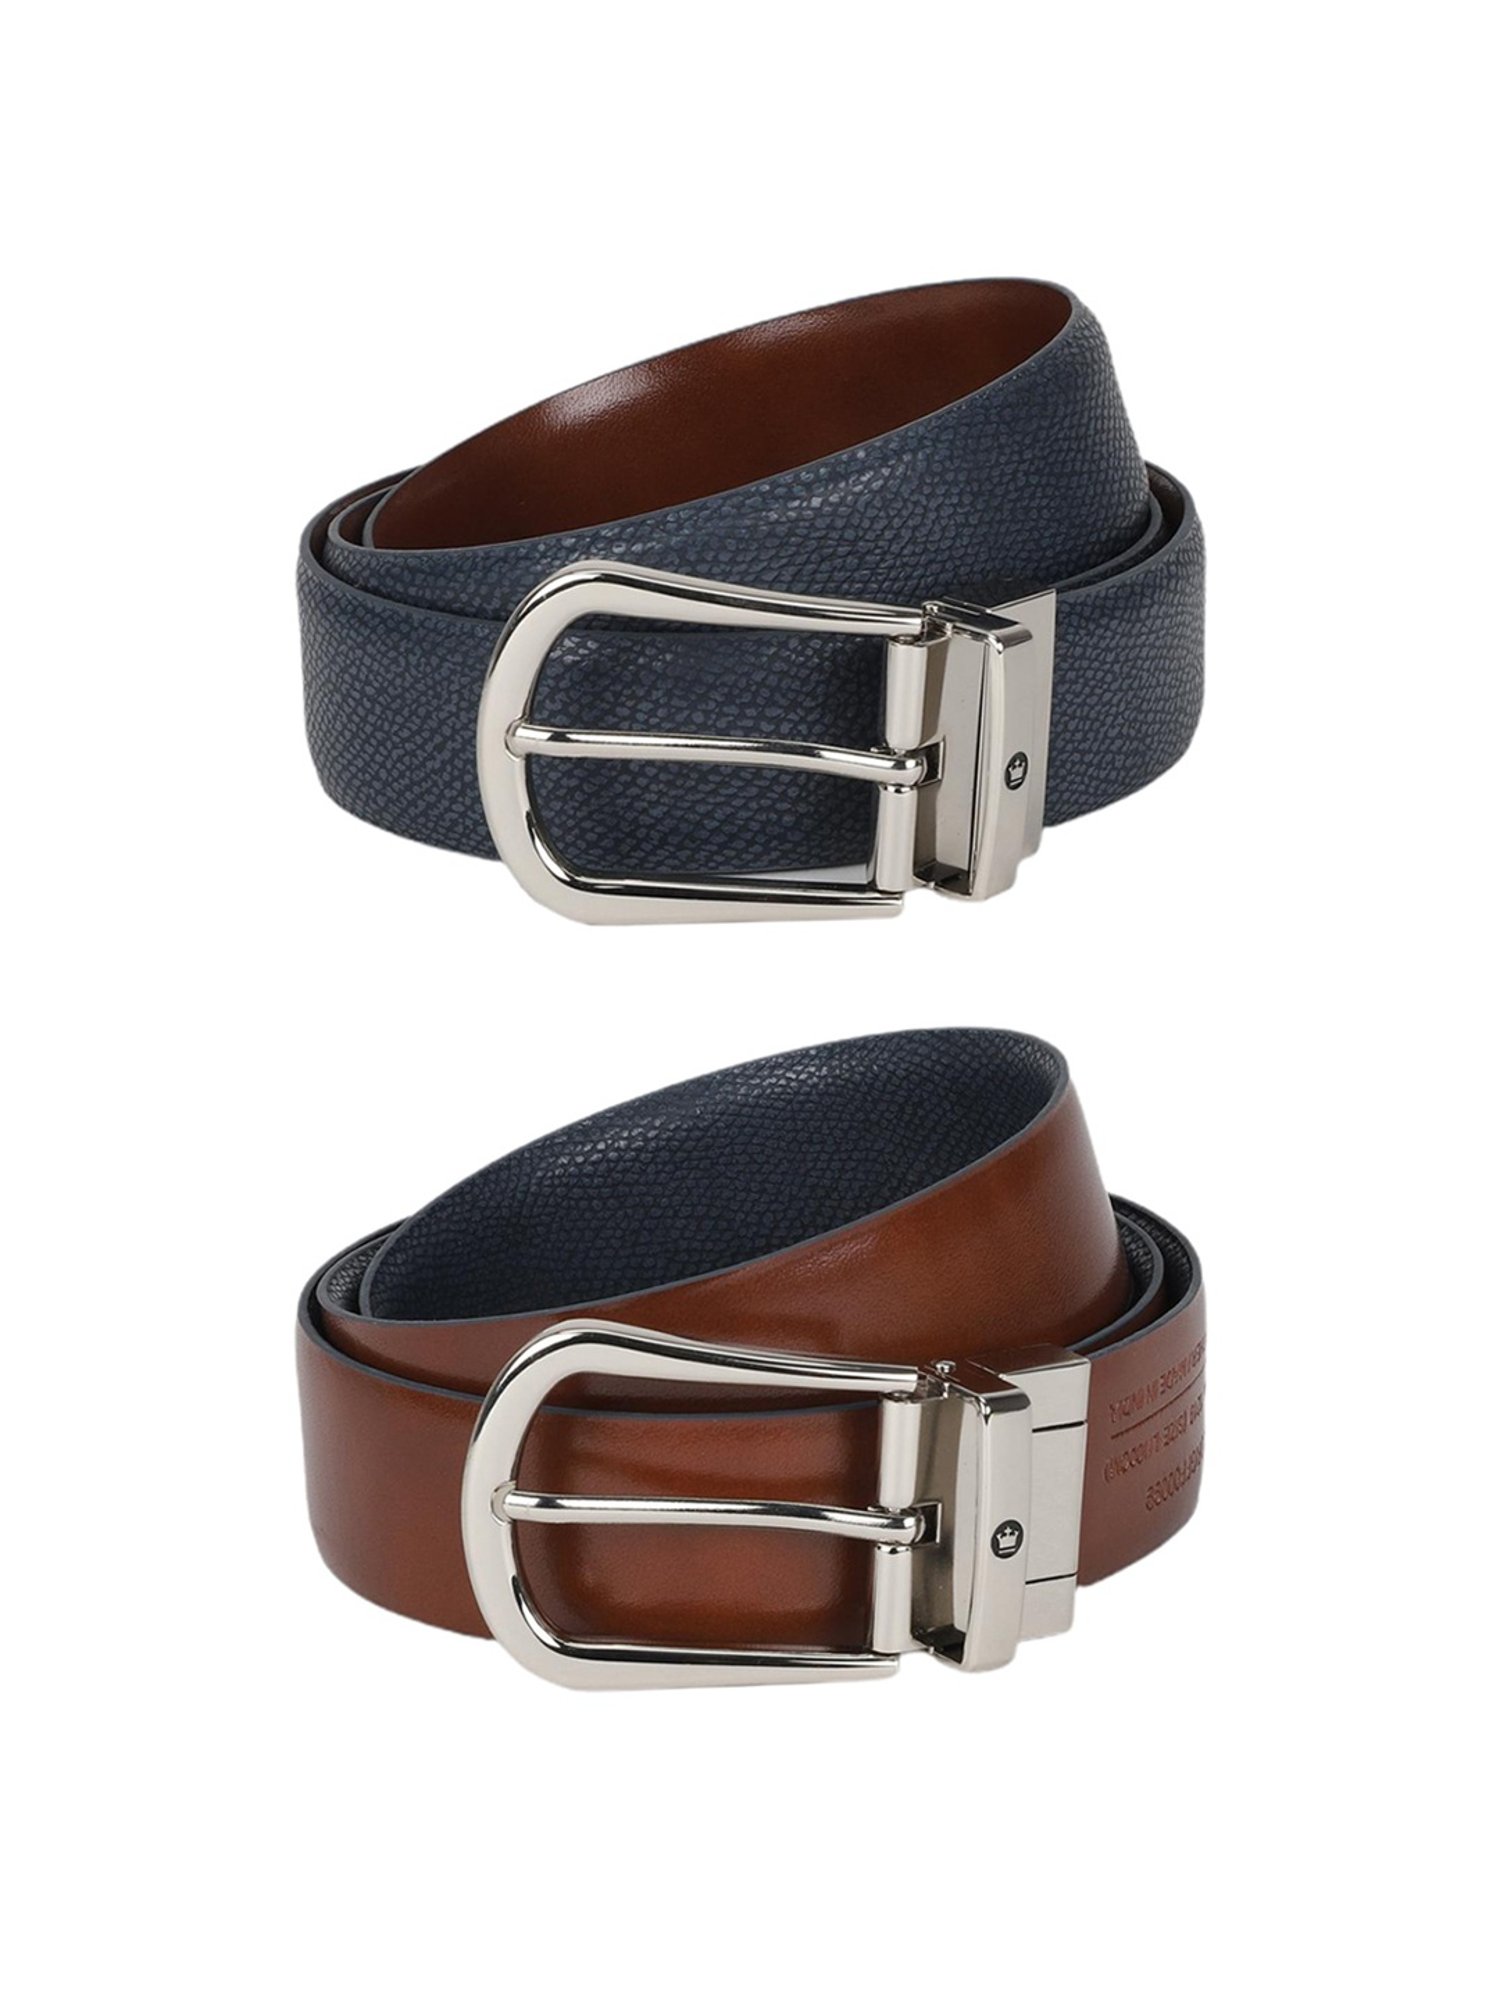 Leyva men's belt in reversible leather